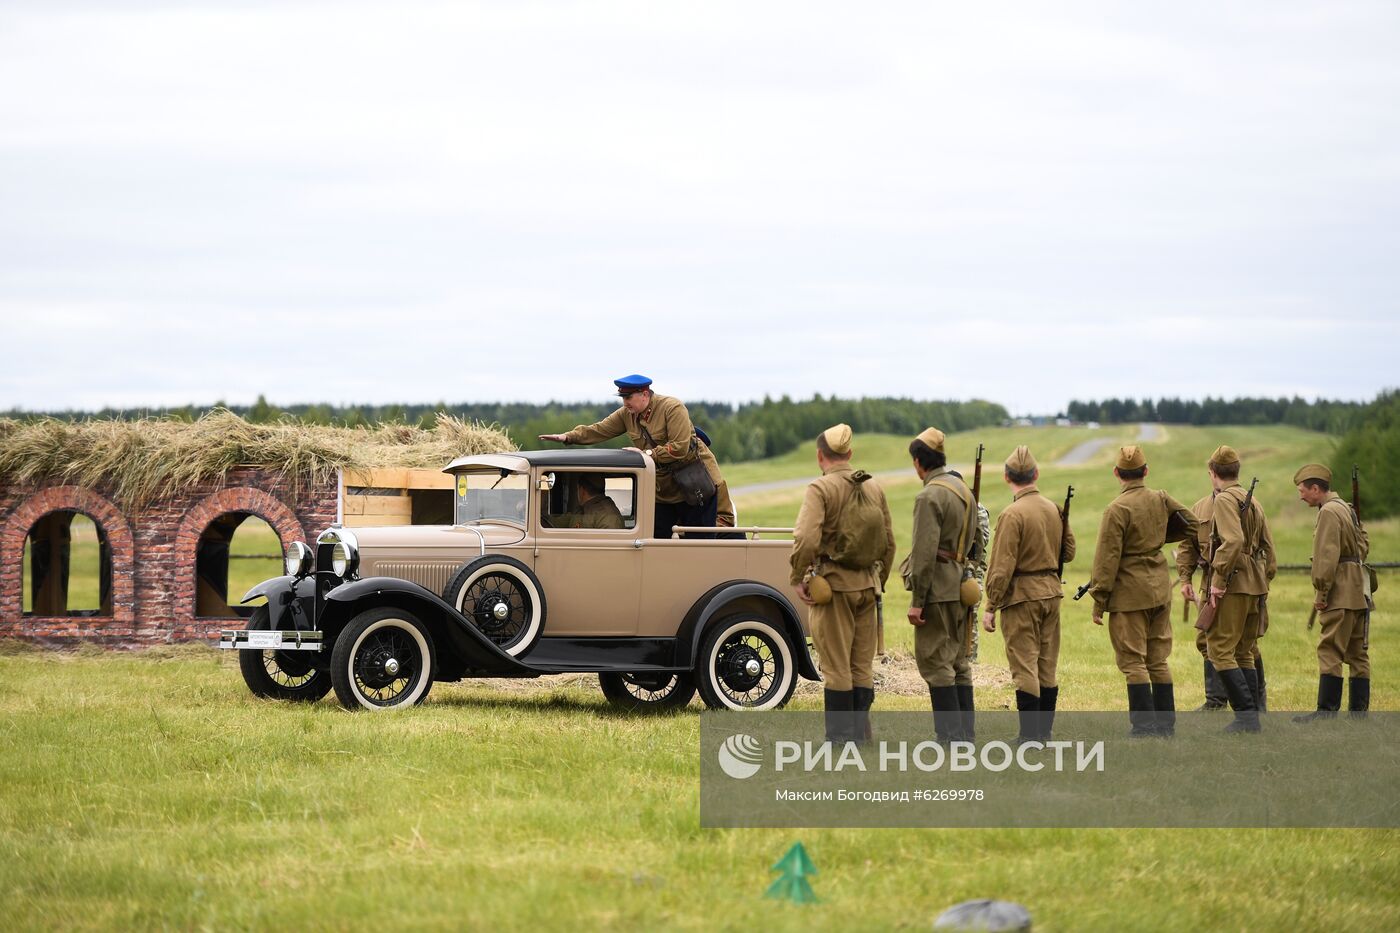 Фестиваль военно-исторической реконструкции в Татарстане 